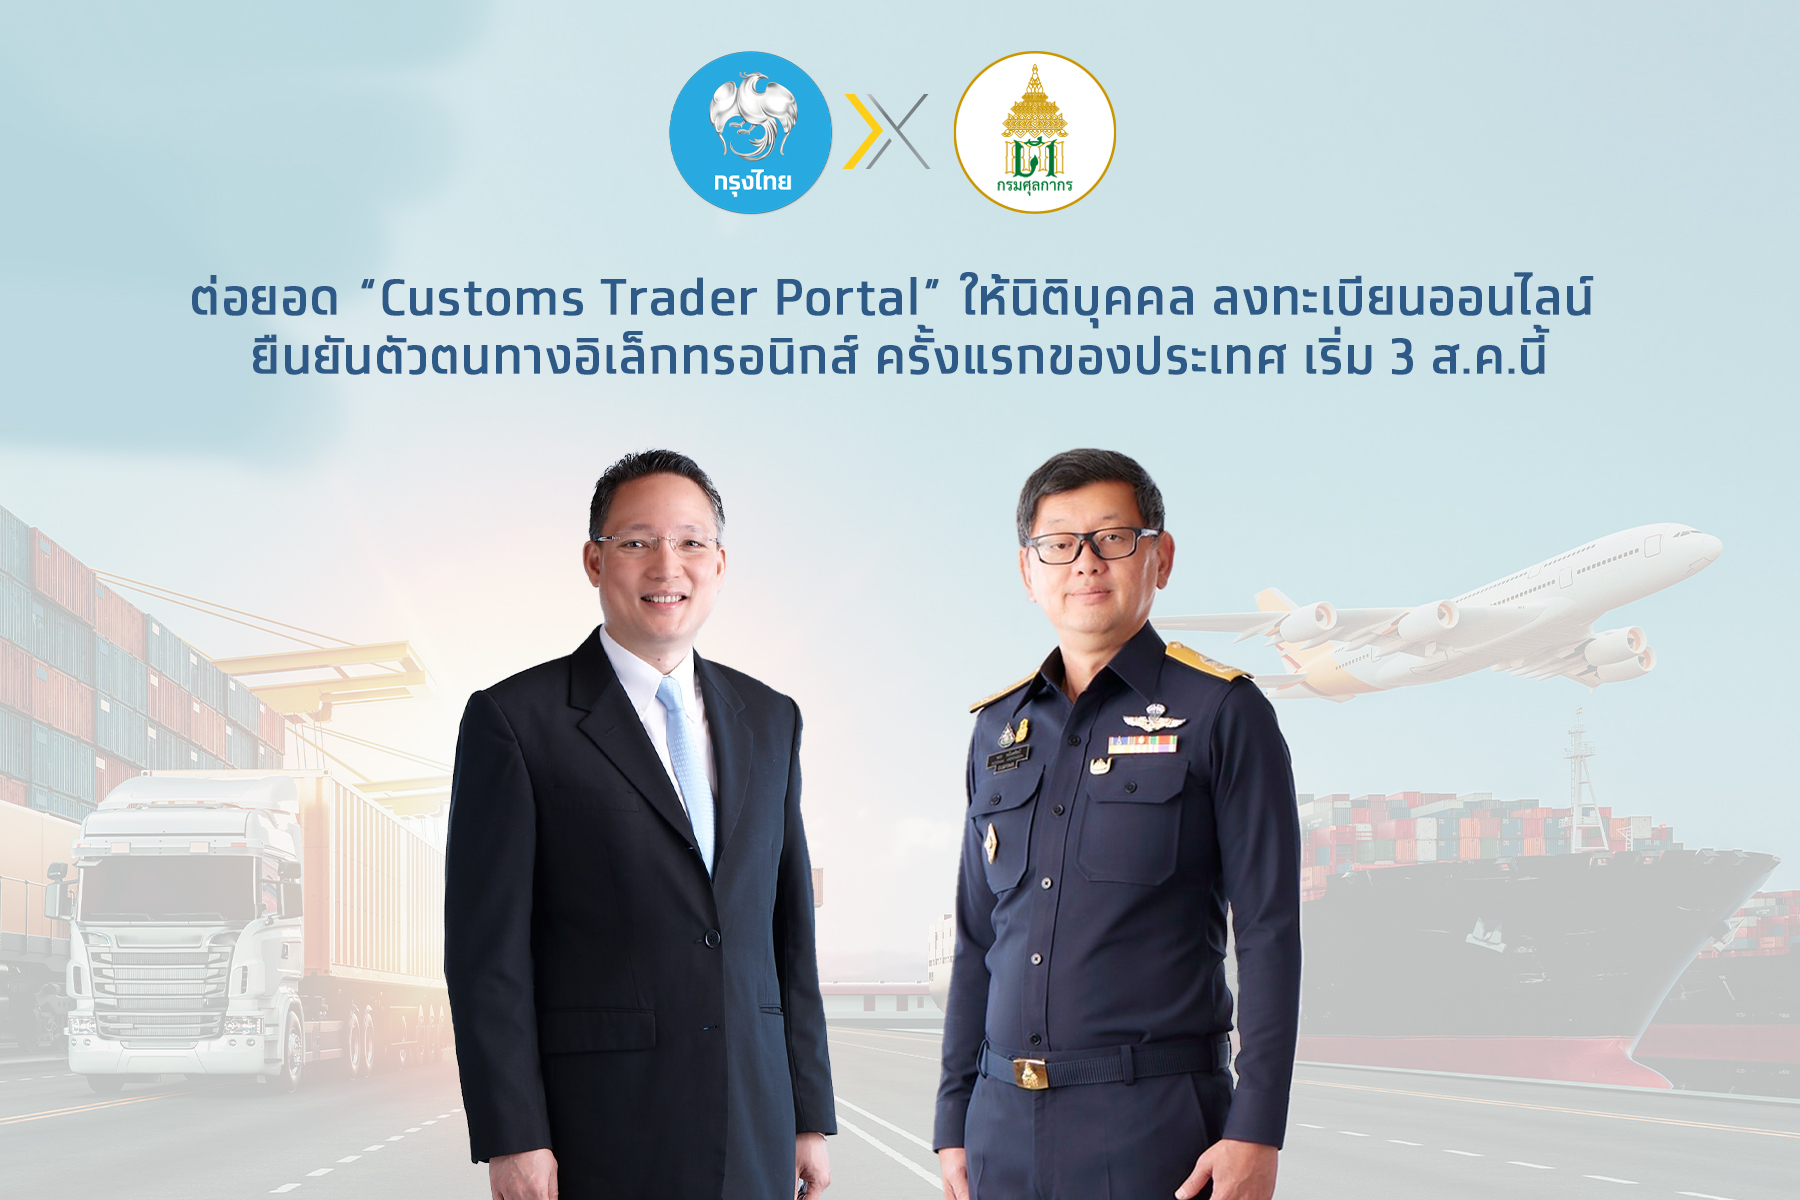 กรมศุลกากรจับมือกรุงไทยต่อยอด Customs Trader Portal ให้นิติบุคคล ลงทะเบียนออนไลน์ ยืนยันตัวตนทางอิเล็คทรอนิกส์ ครั้งแรกของประเทศ